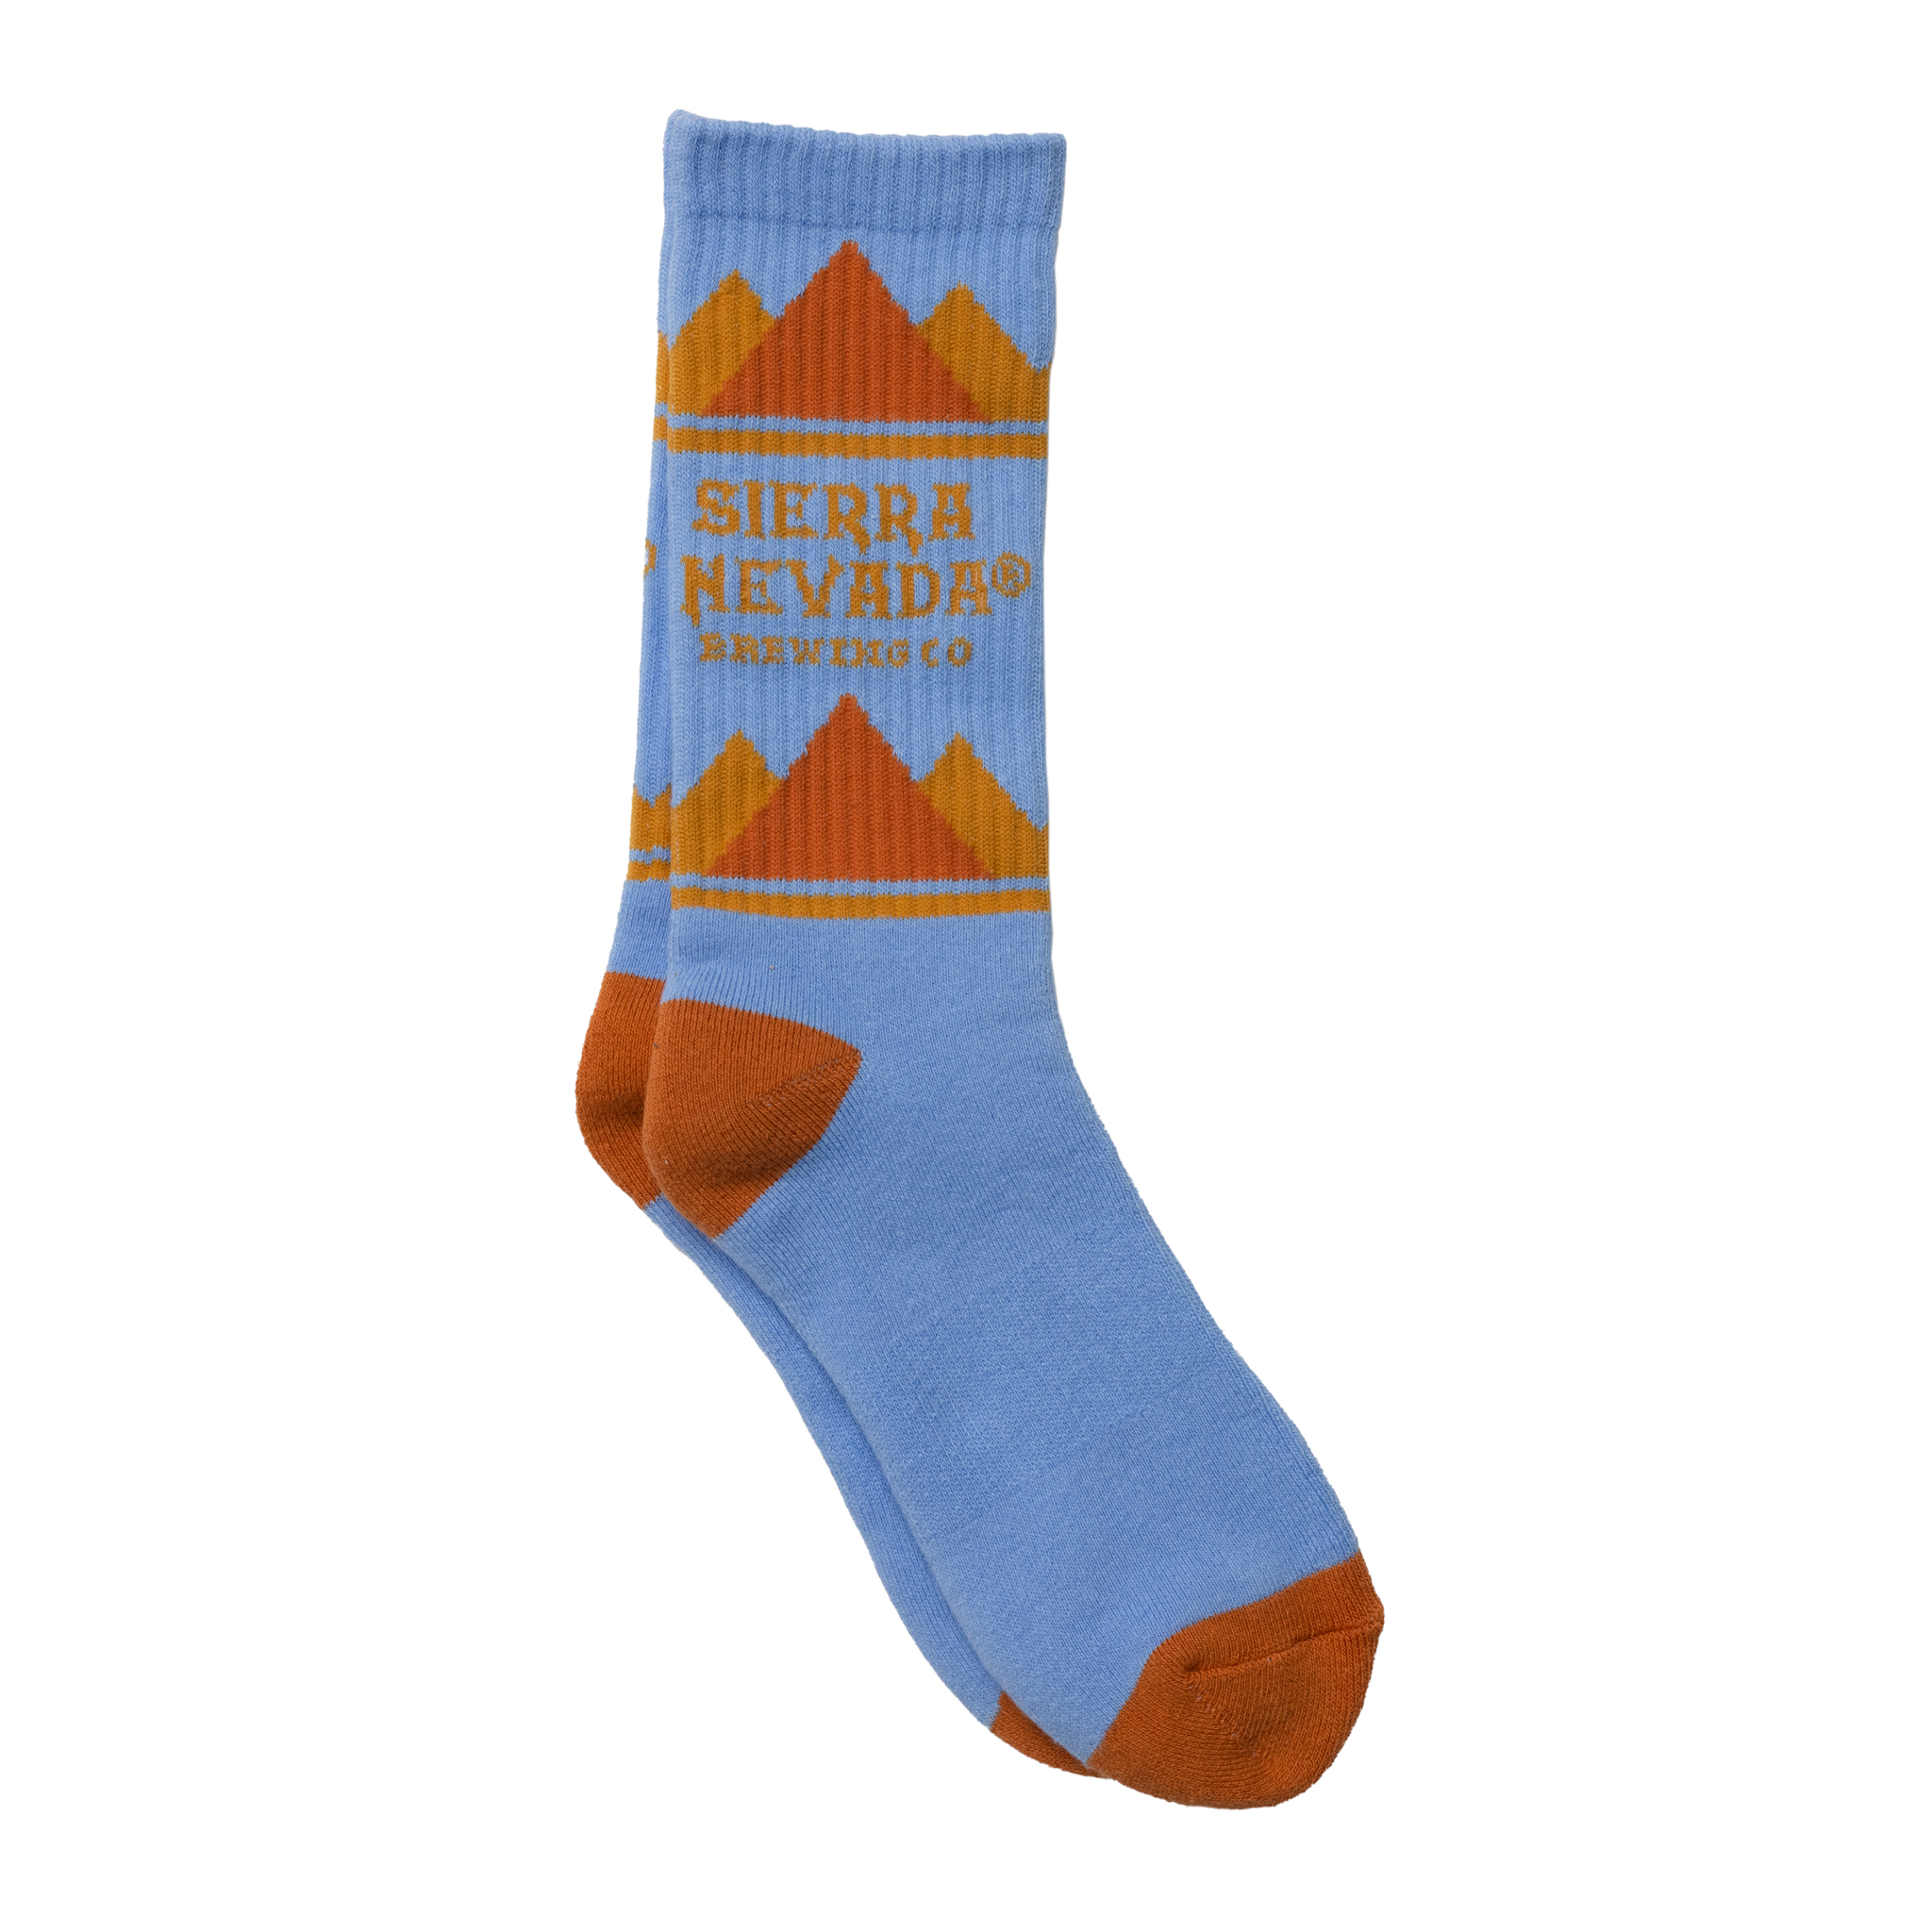 Sierra Nevada Brewing Co. Locale Mountain socks